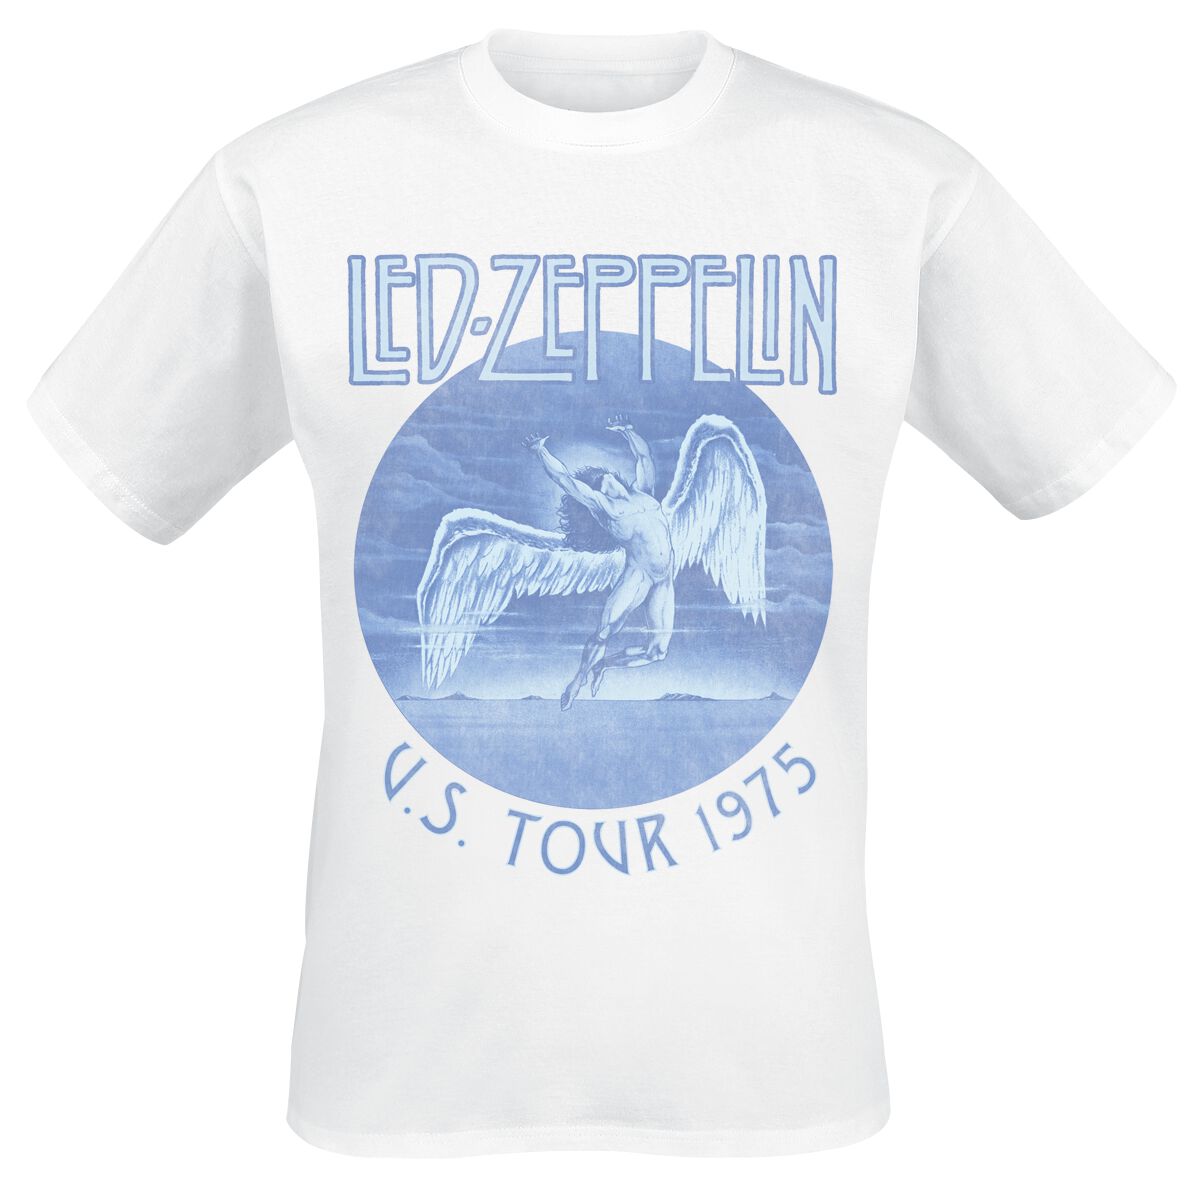 T-Shirt Manches courtes de Led Zeppelin - Tour 75 - S à XXL - pour Homme - blanc